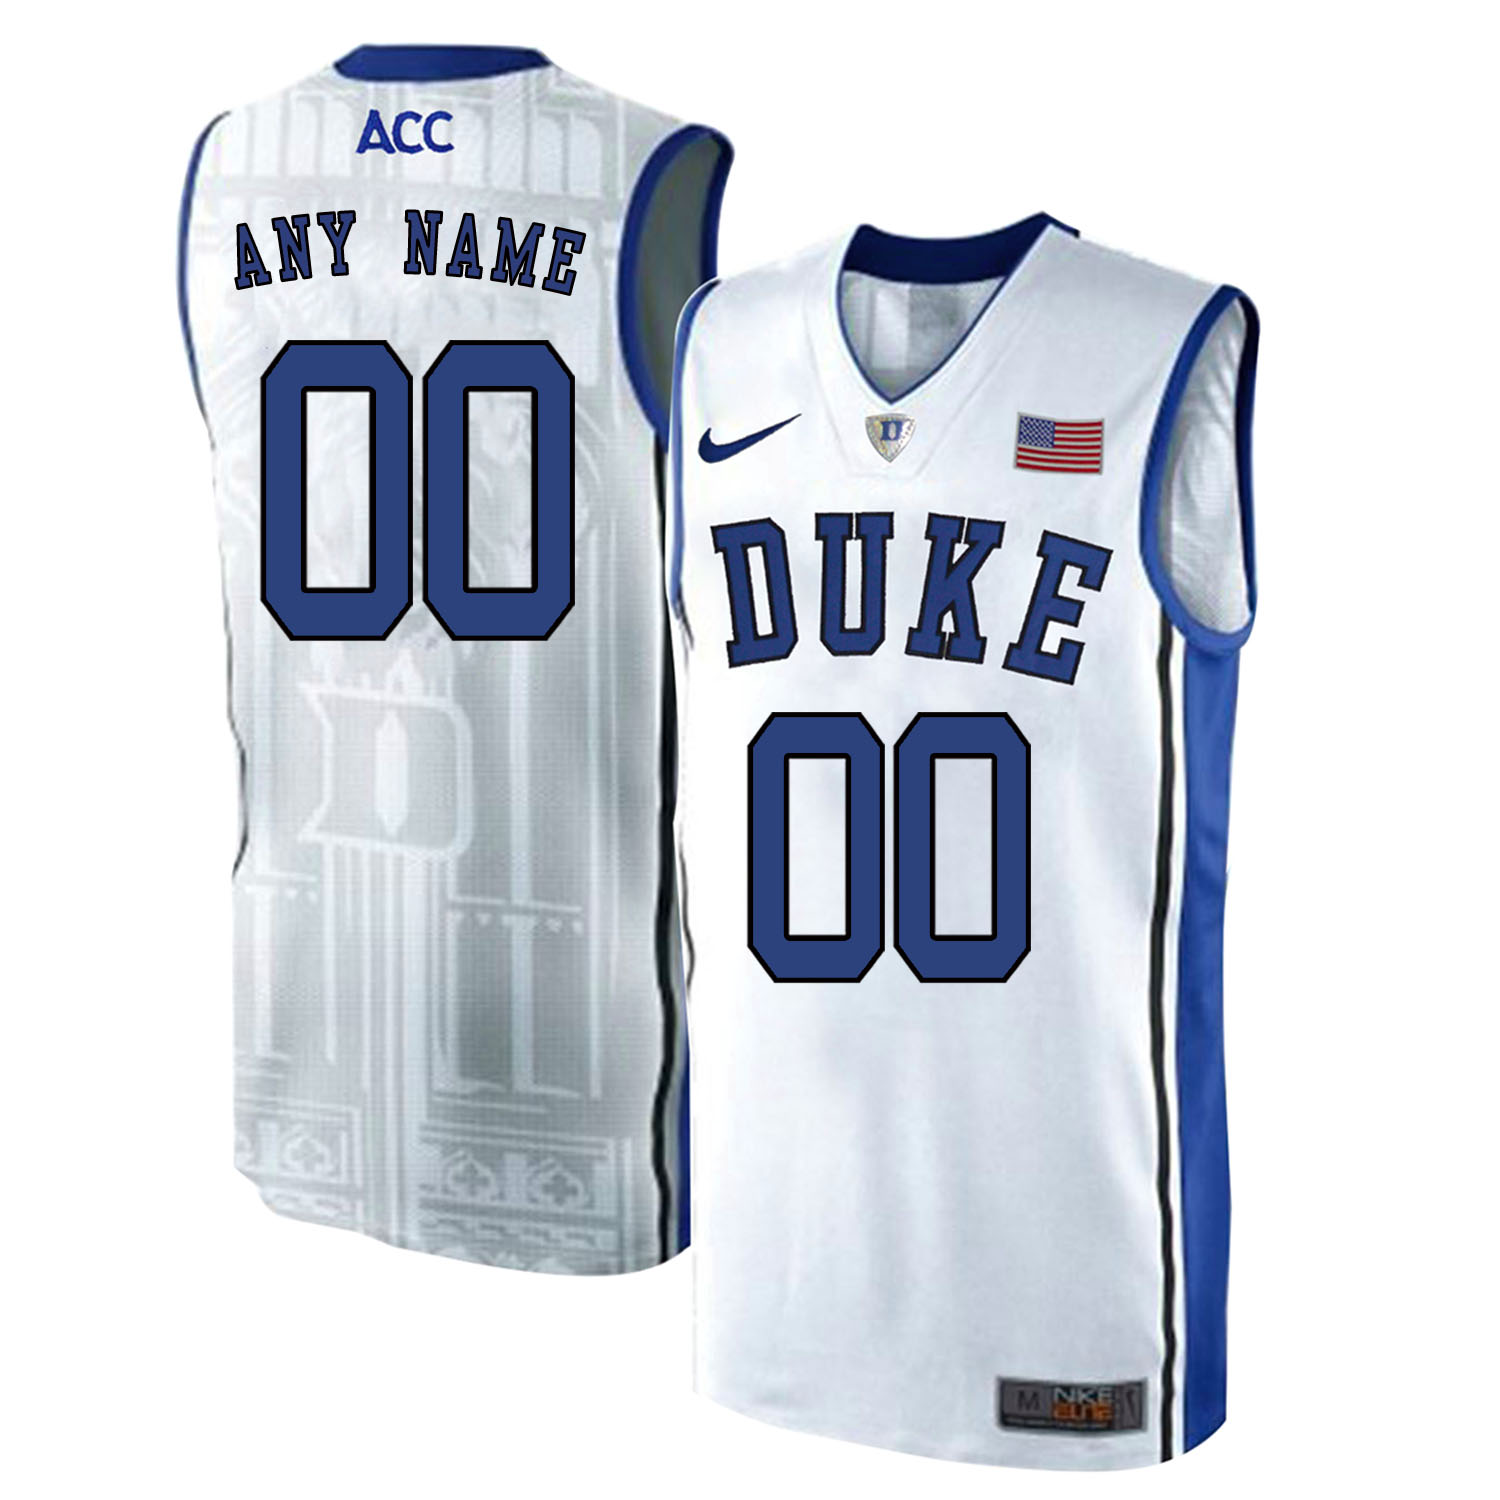 Duke Blue Devils Men's Customized White Elite Nike College Basketball Jersey